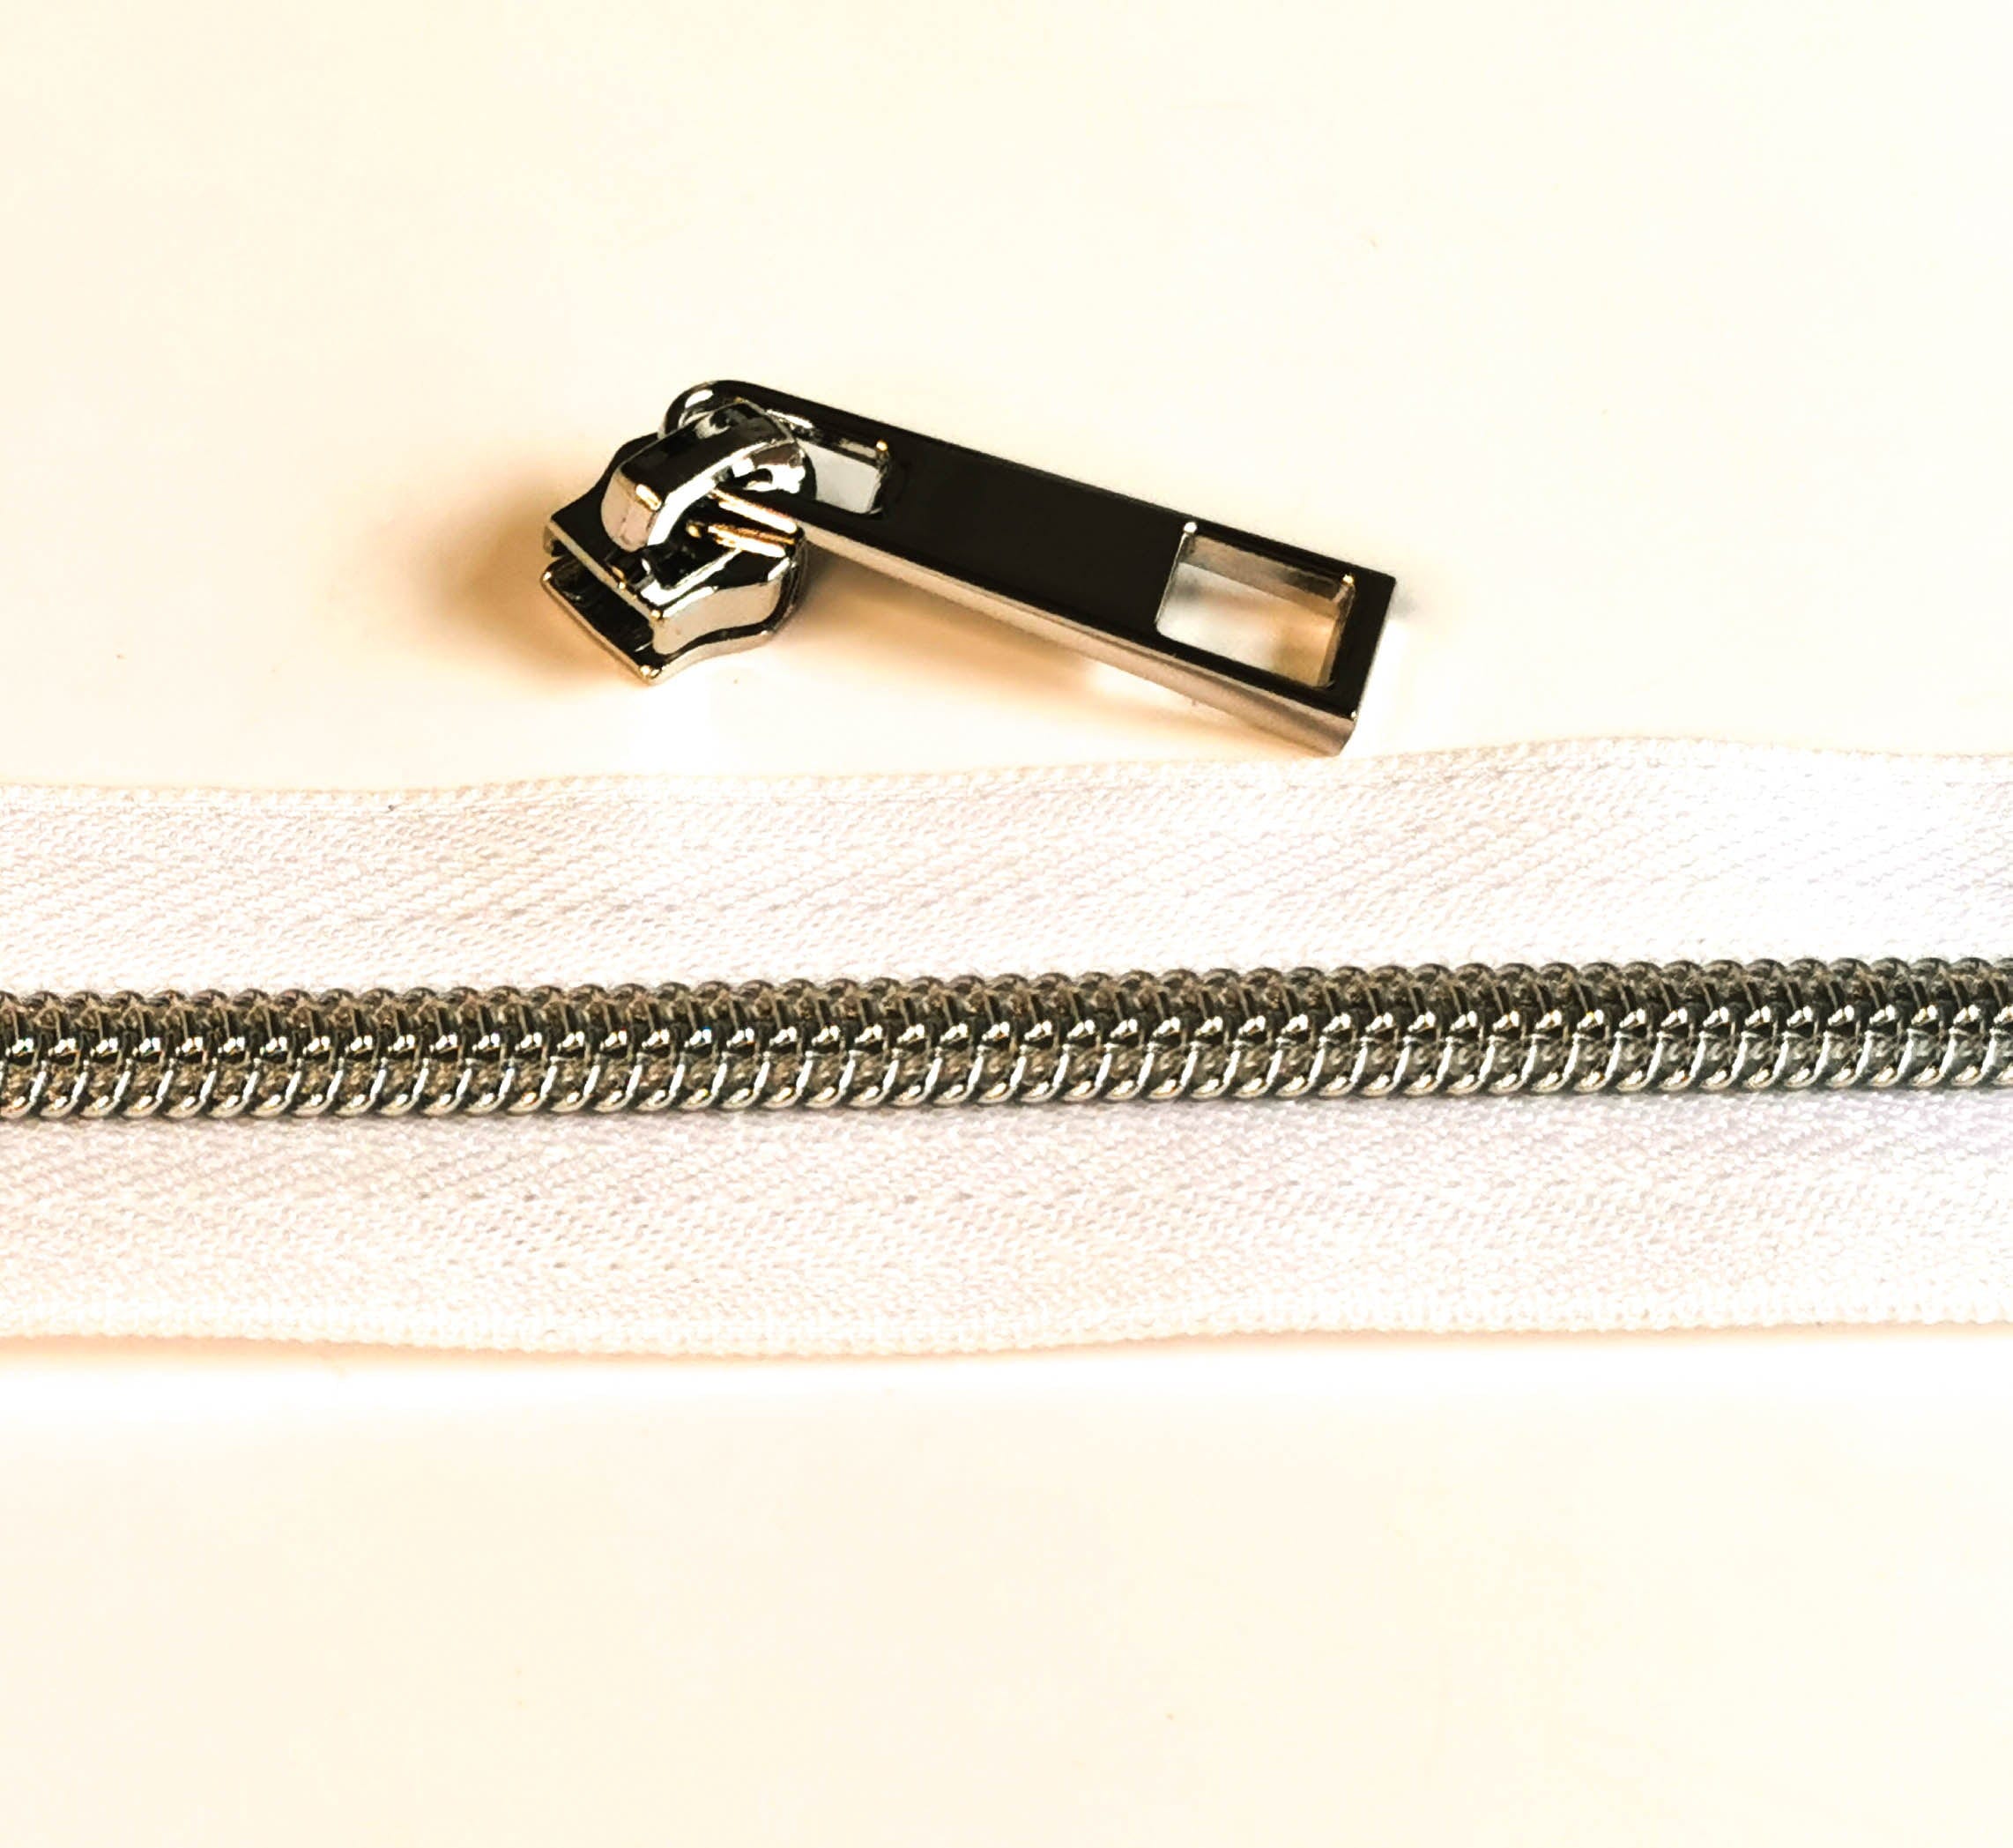 Kiwi Bagineers Zippers White / Nickel silver Zipper Tape. 30" 76cm of #5 Zipper tape with 2 Zipper Sliders/Pullers By Kiwi Bagineers